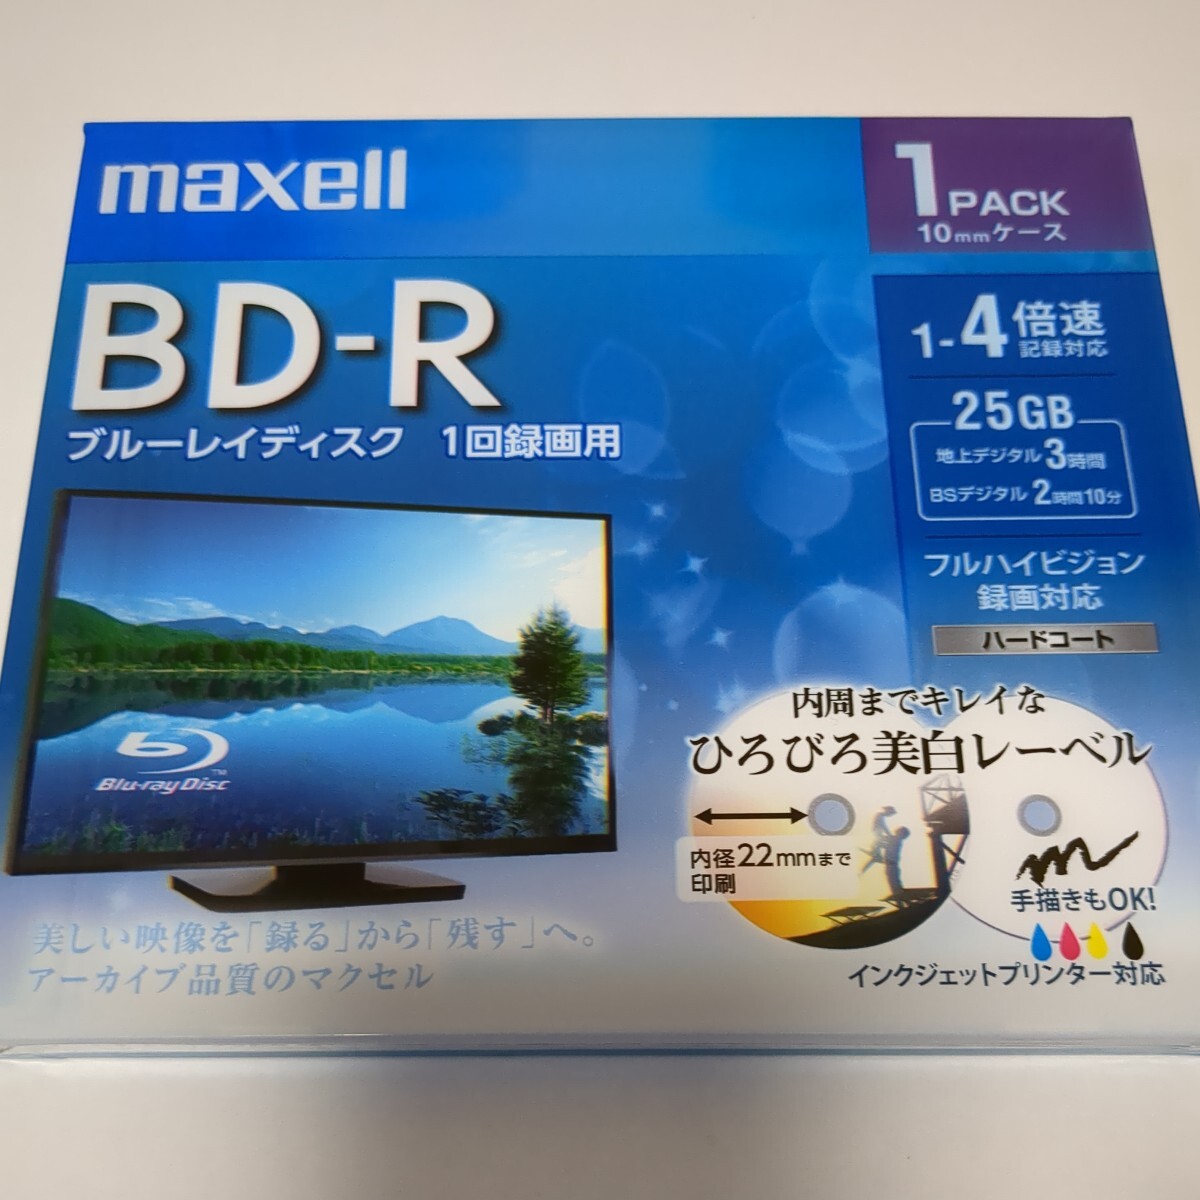 DVD-R DL BD-R видеозапись для Blue-ray диск носитель информации maxellmak cell совместно в подарок есть бесплатная доставка 